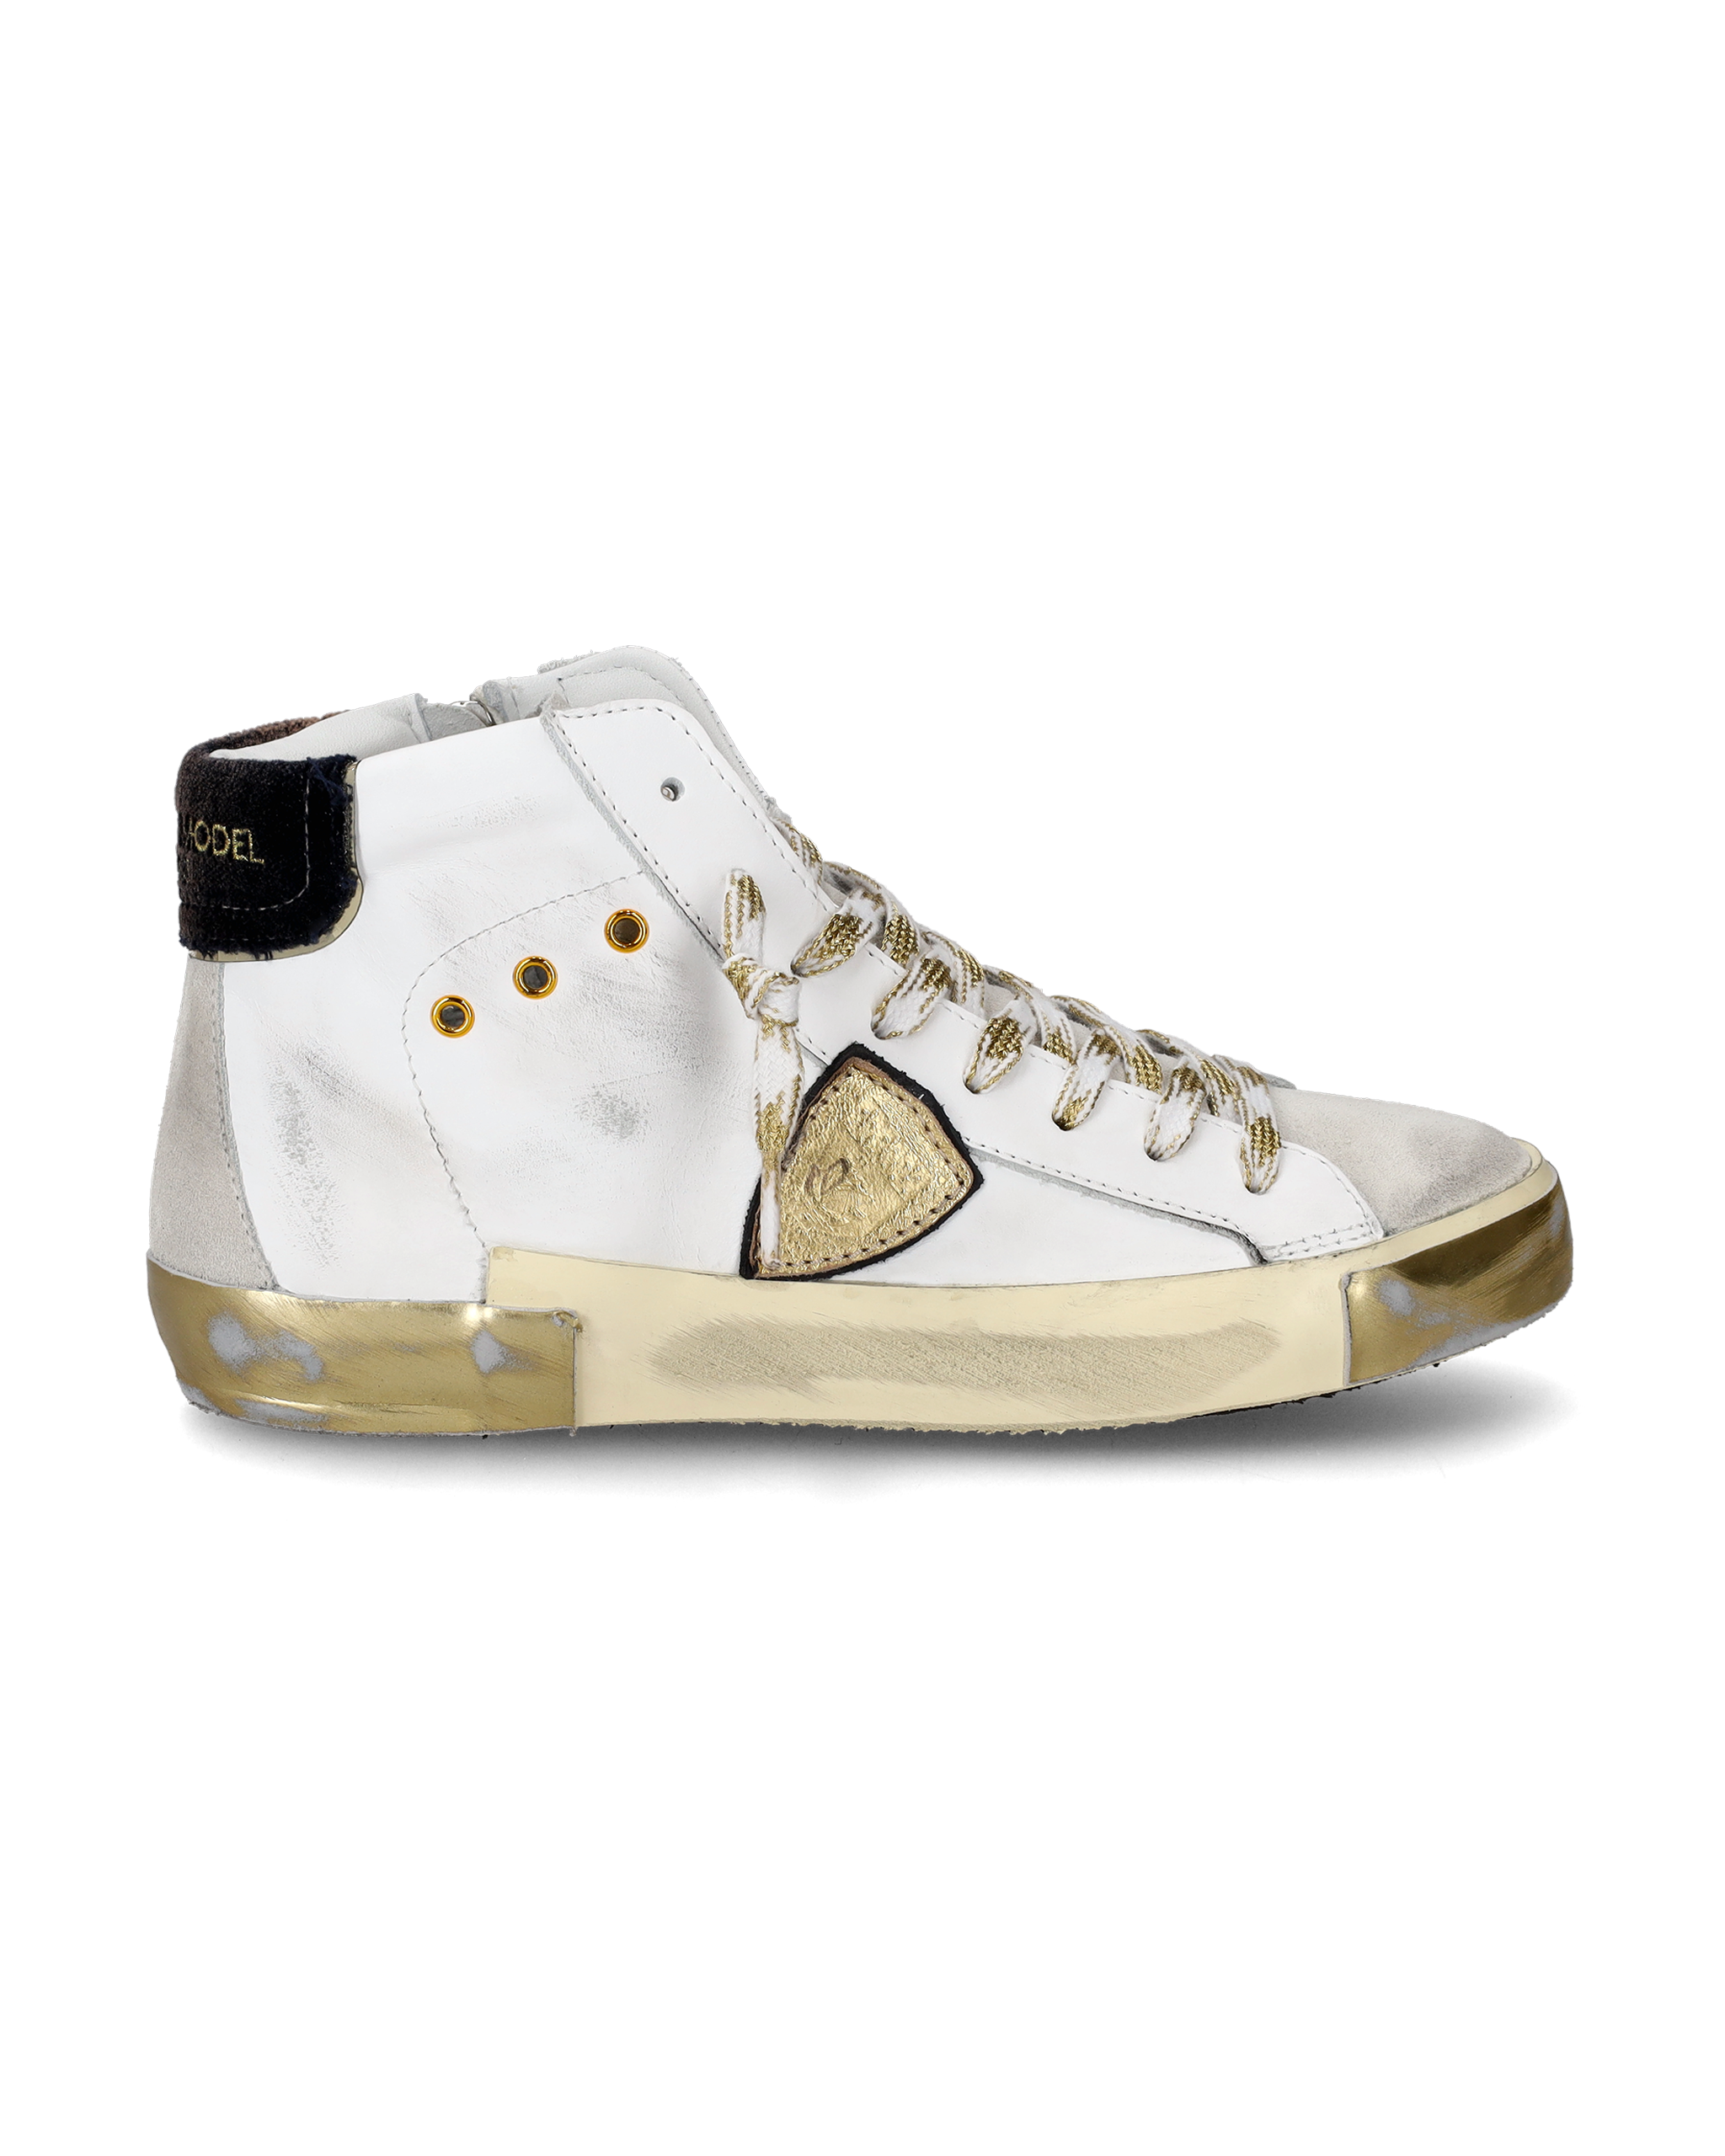 Zapatillas Blancas con detalles dorados, altura de la suela 3,5 cm